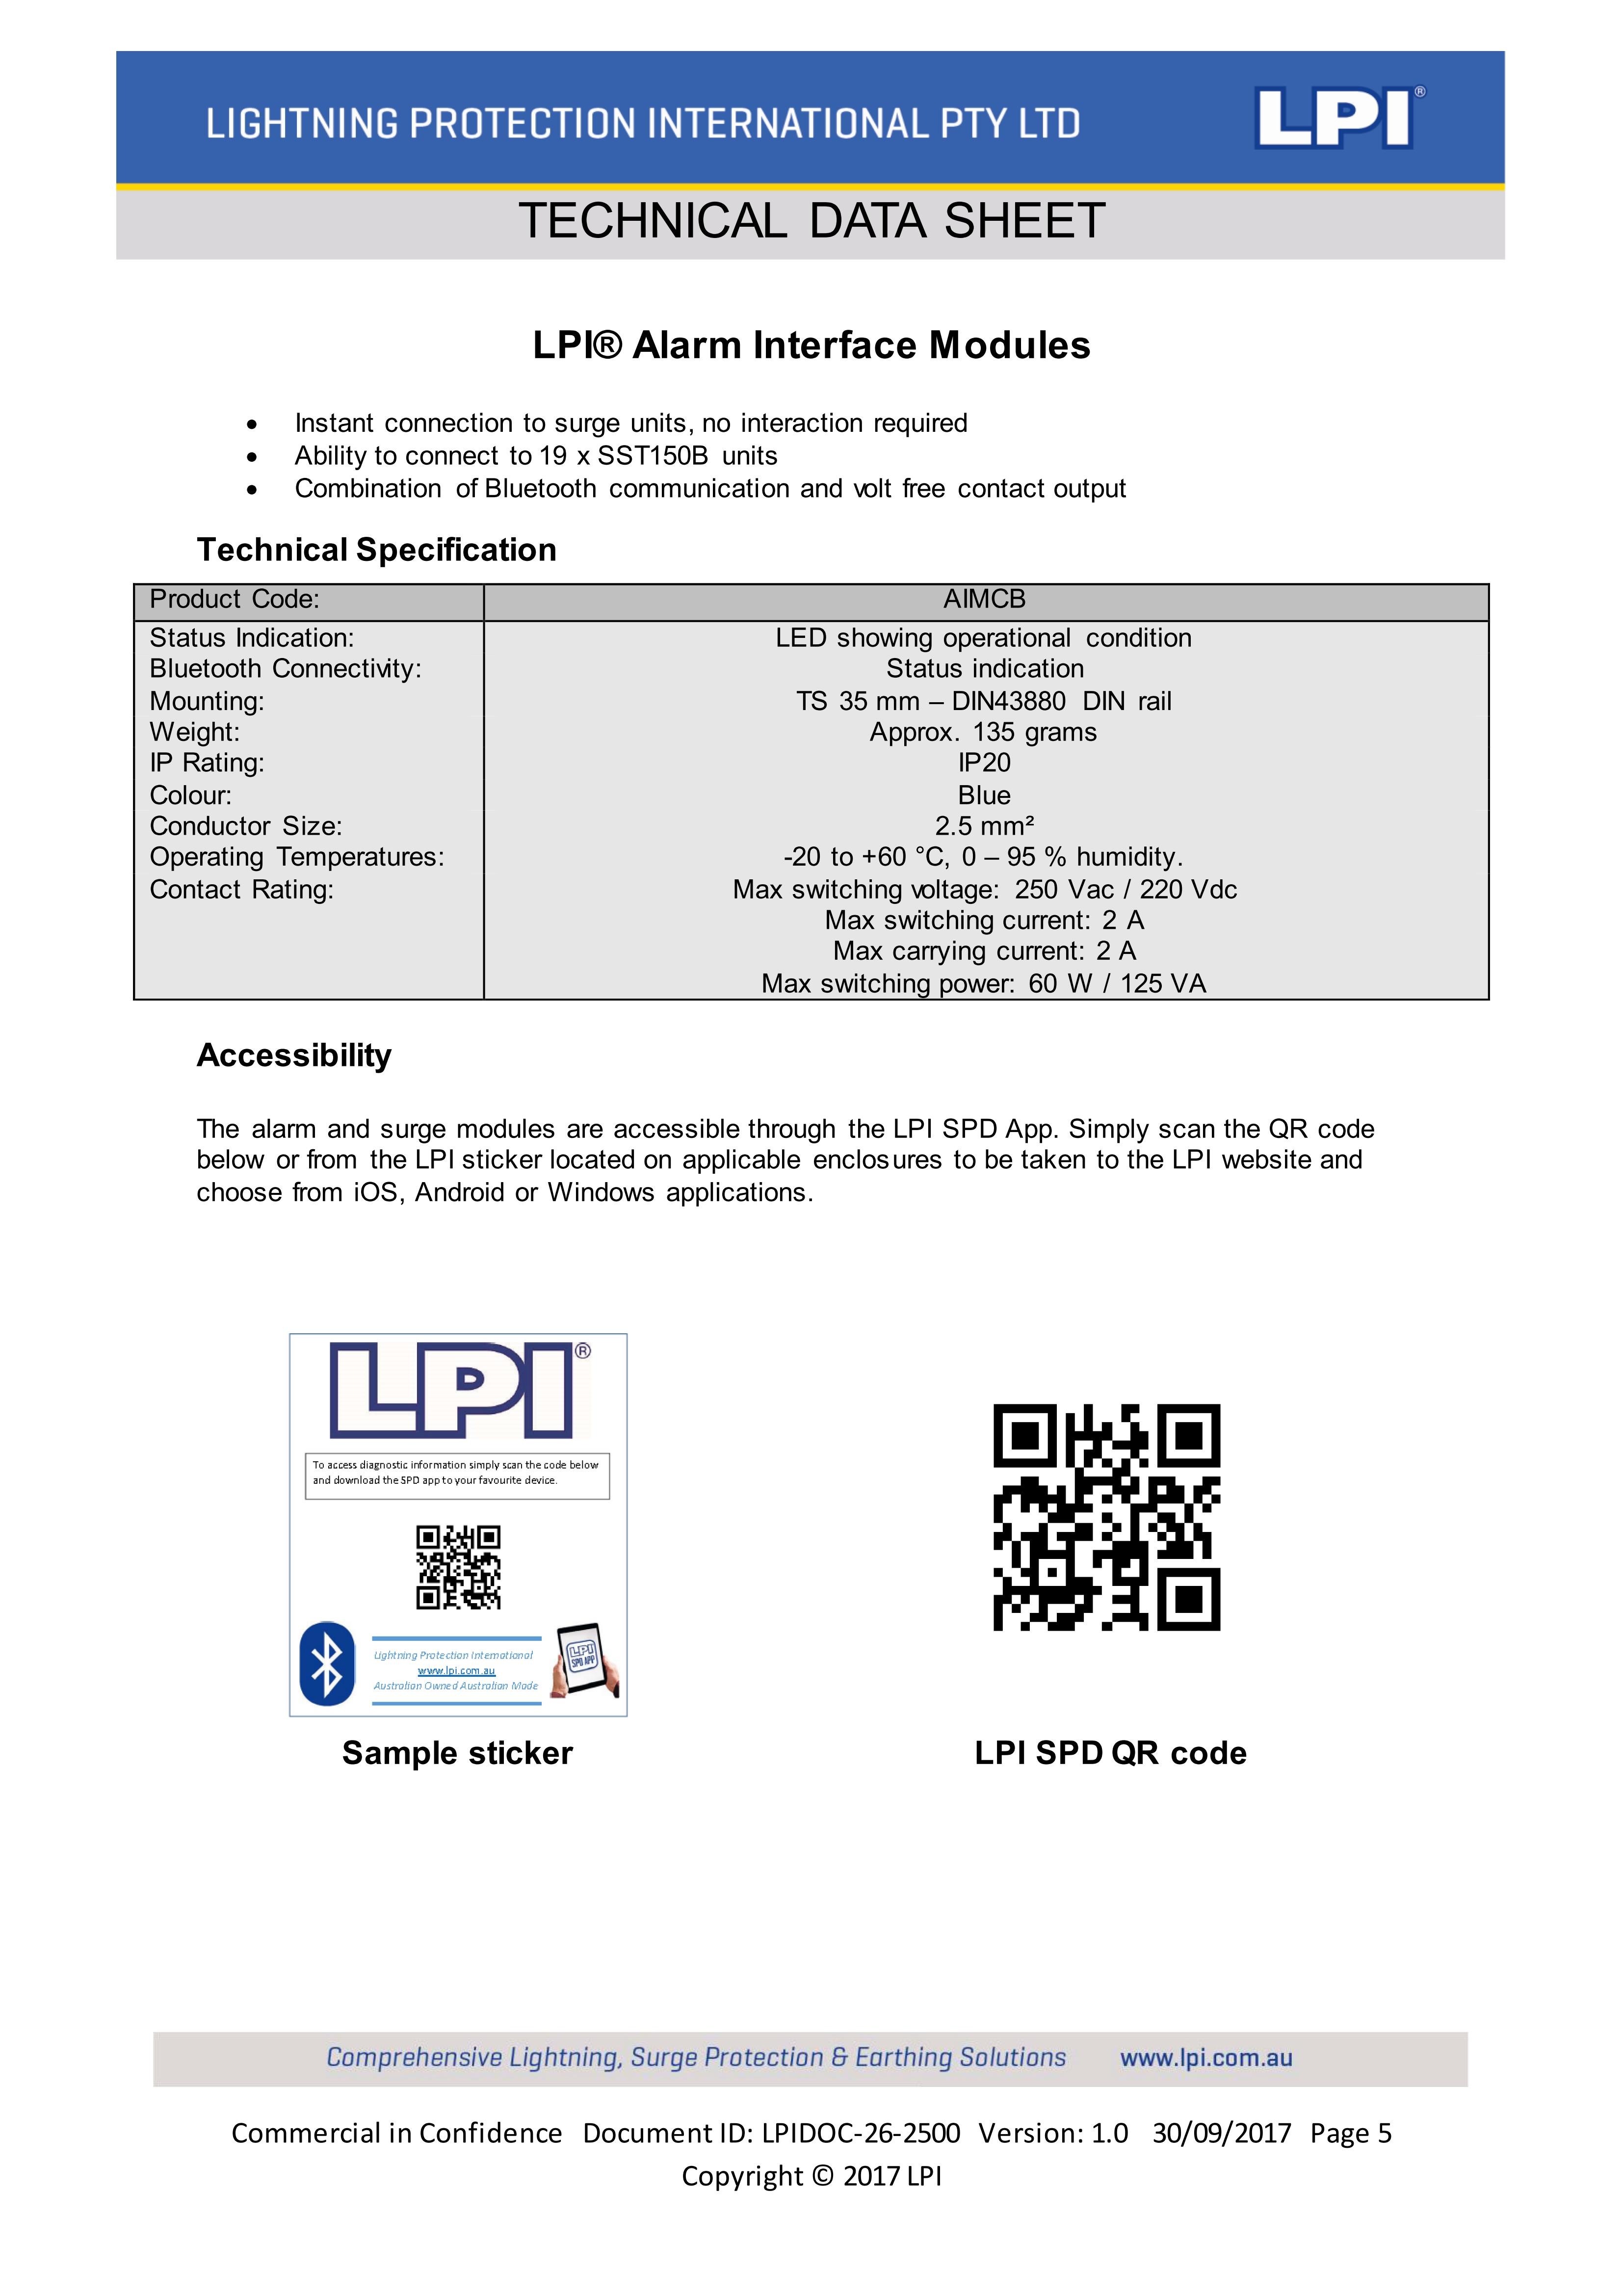 Tủ cắt lọc sét LPI, thiết bị chống sét LPI